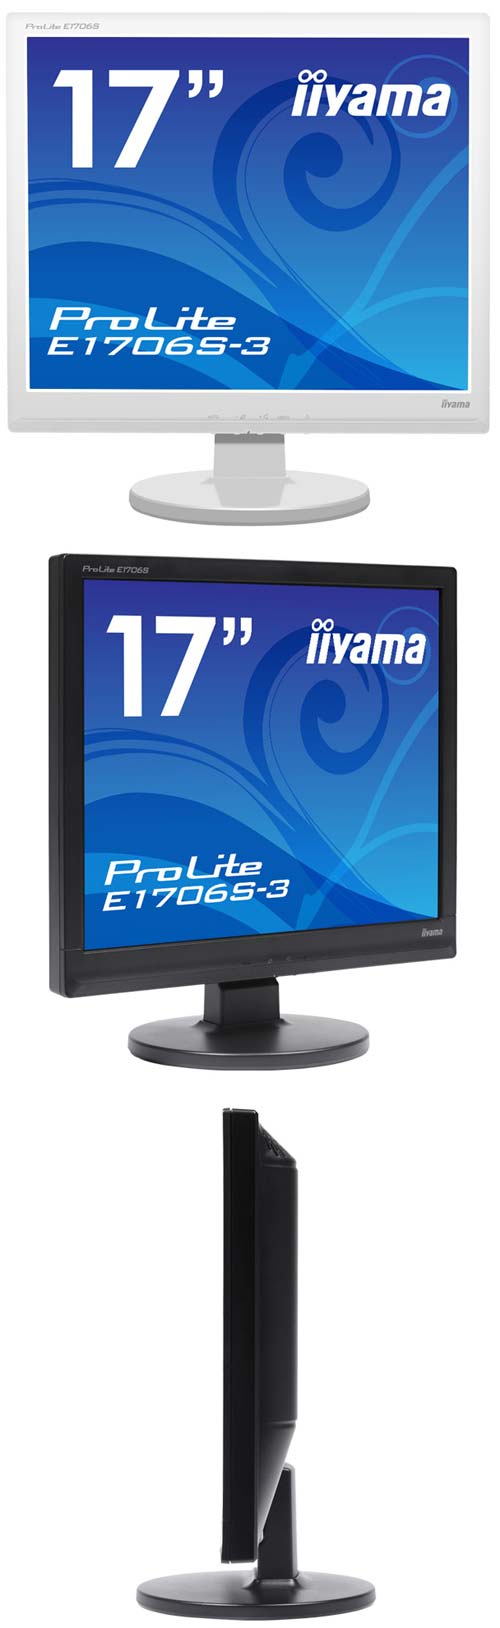 iiyama предлагает мониторы серии ProLite E1706S-3